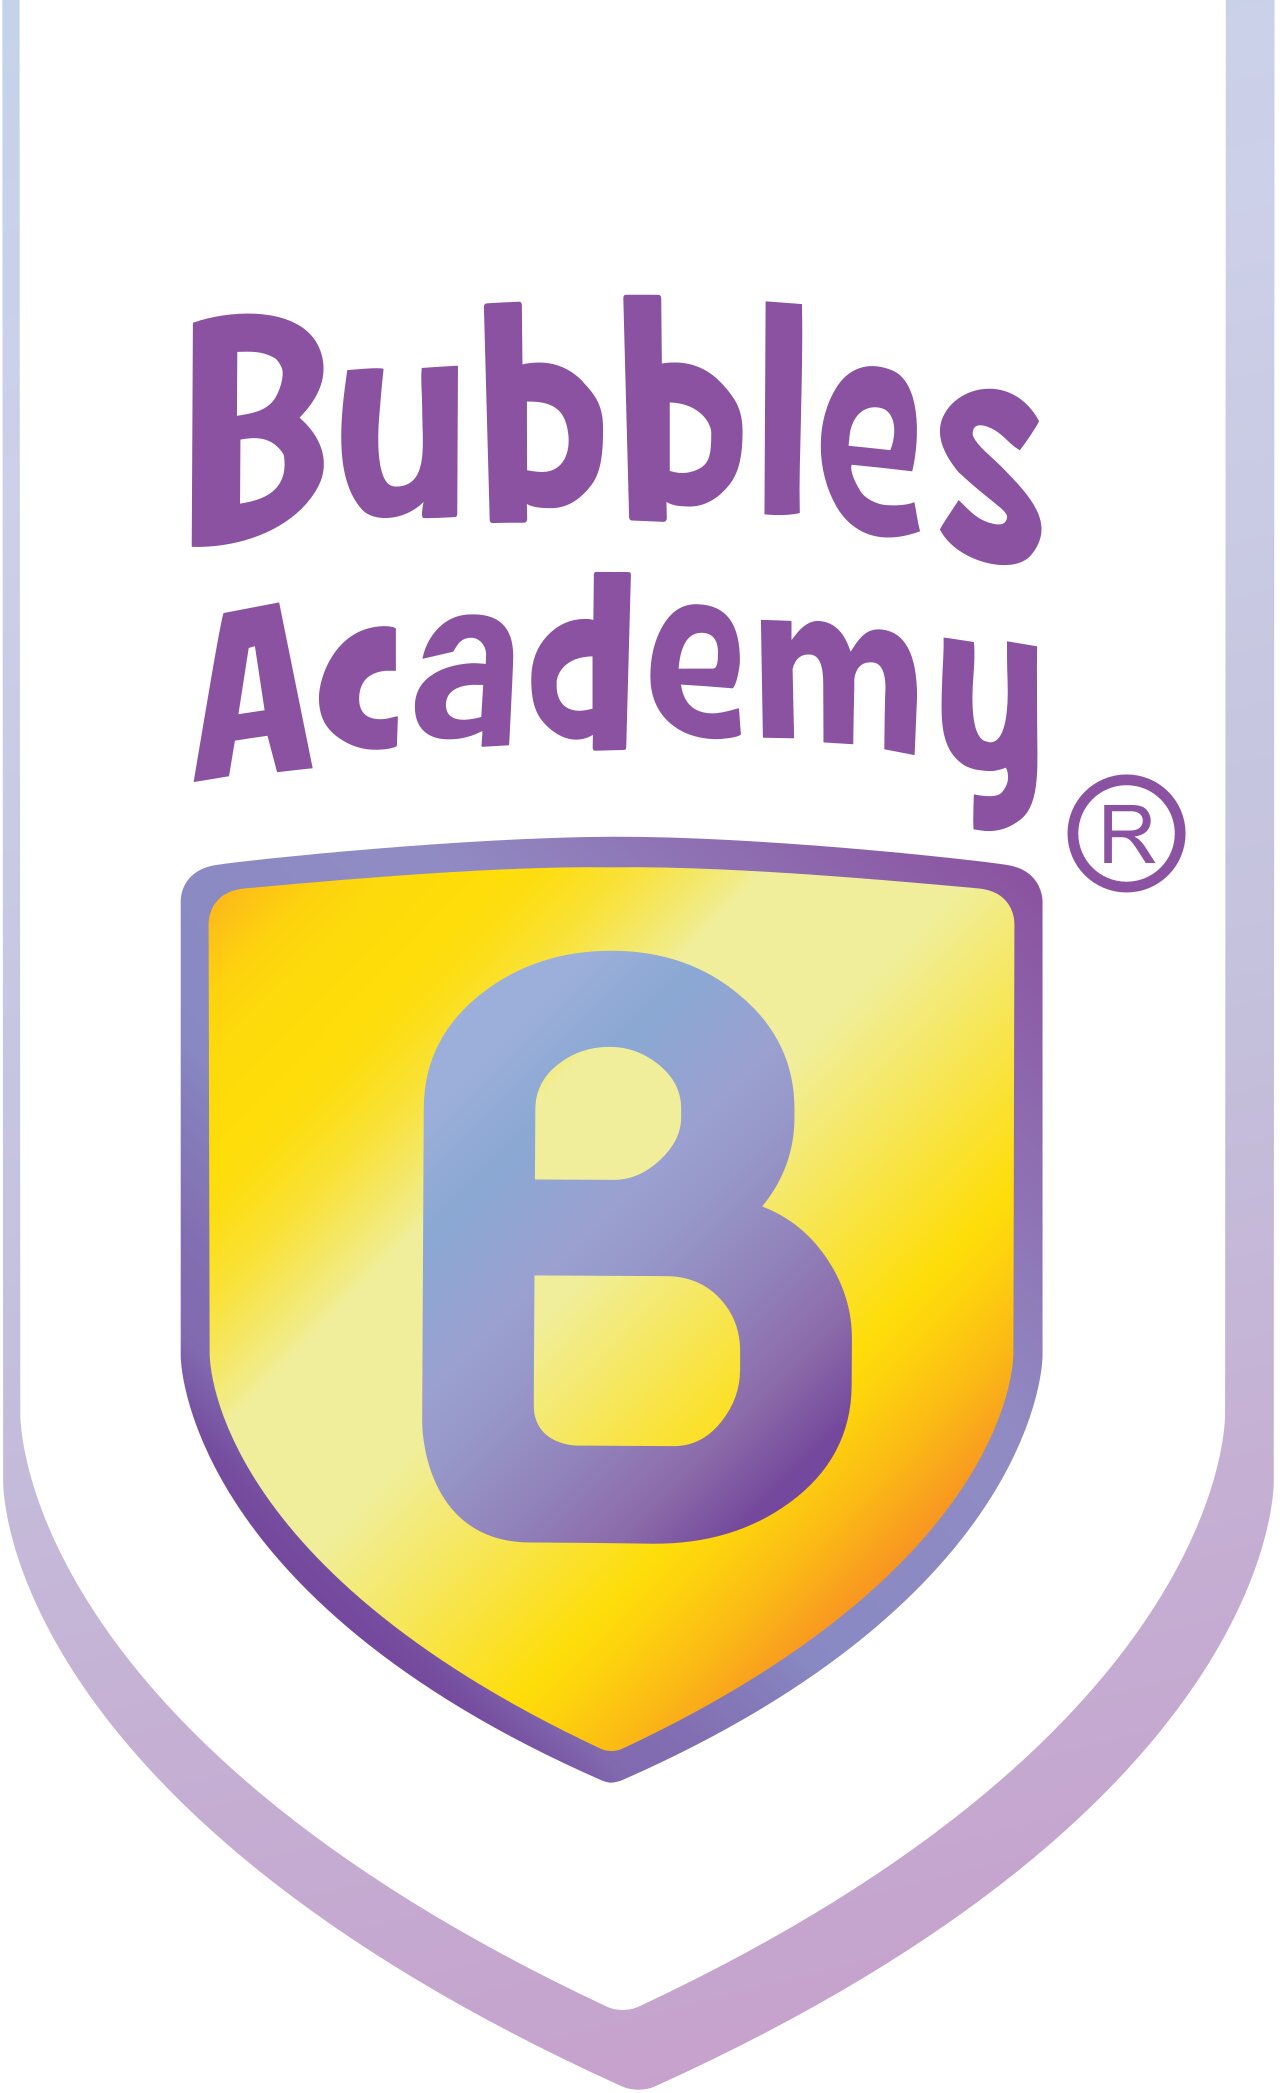 Bubbles Academy Preschool